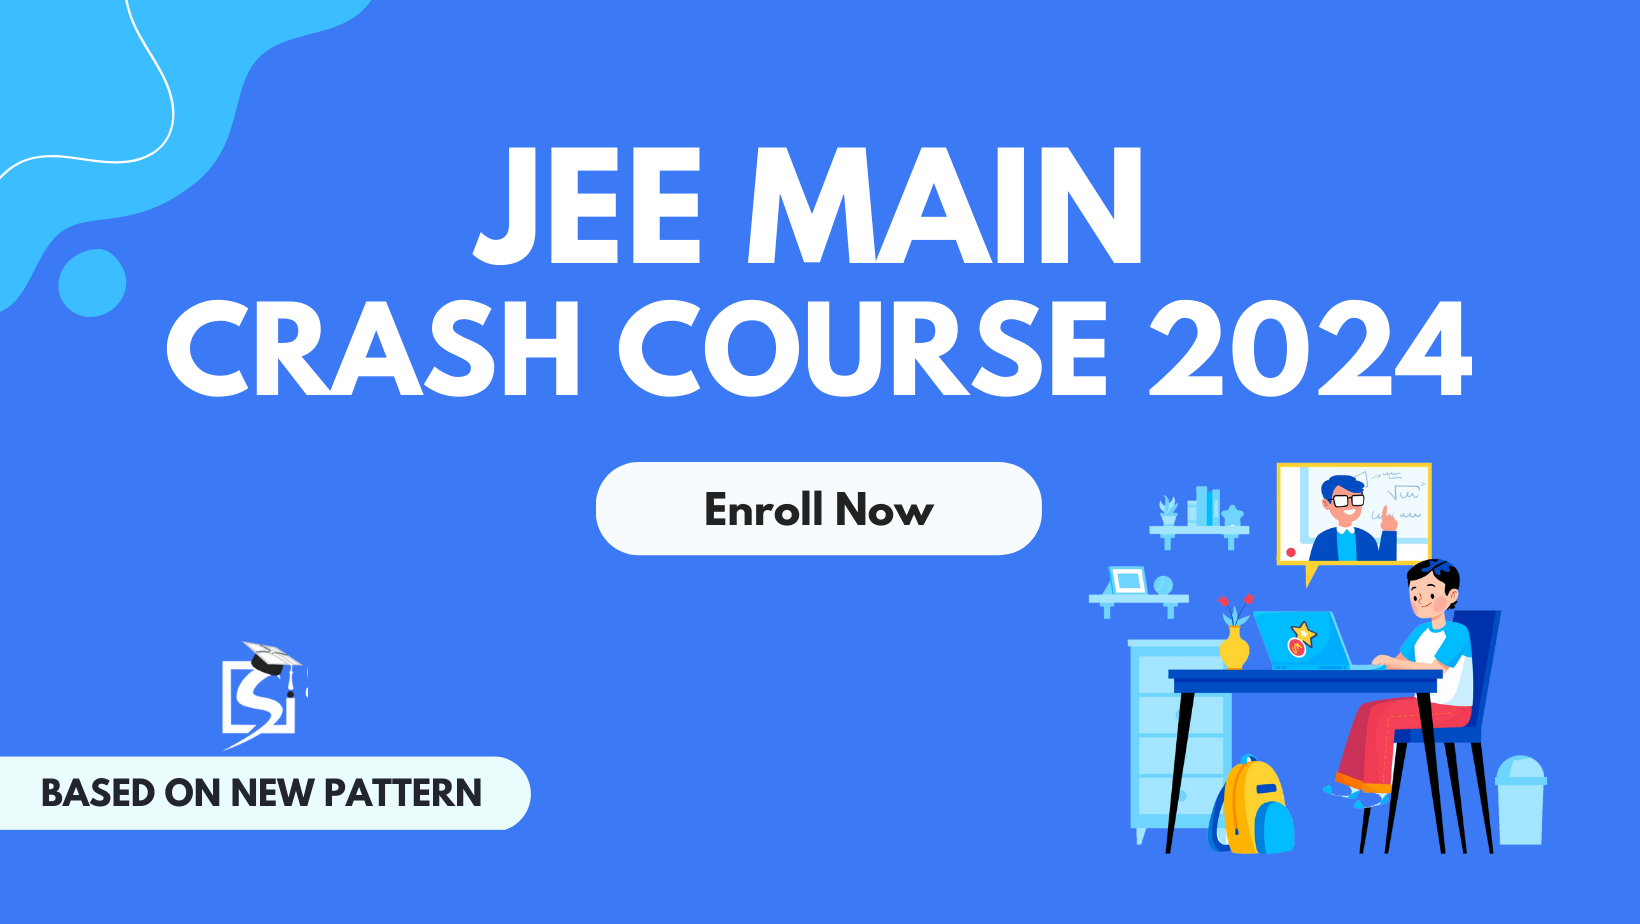 Advantages of Sarthak’s eConnect's JEE Main online crash course 2024 - Bangalore Tutoring, Lessons